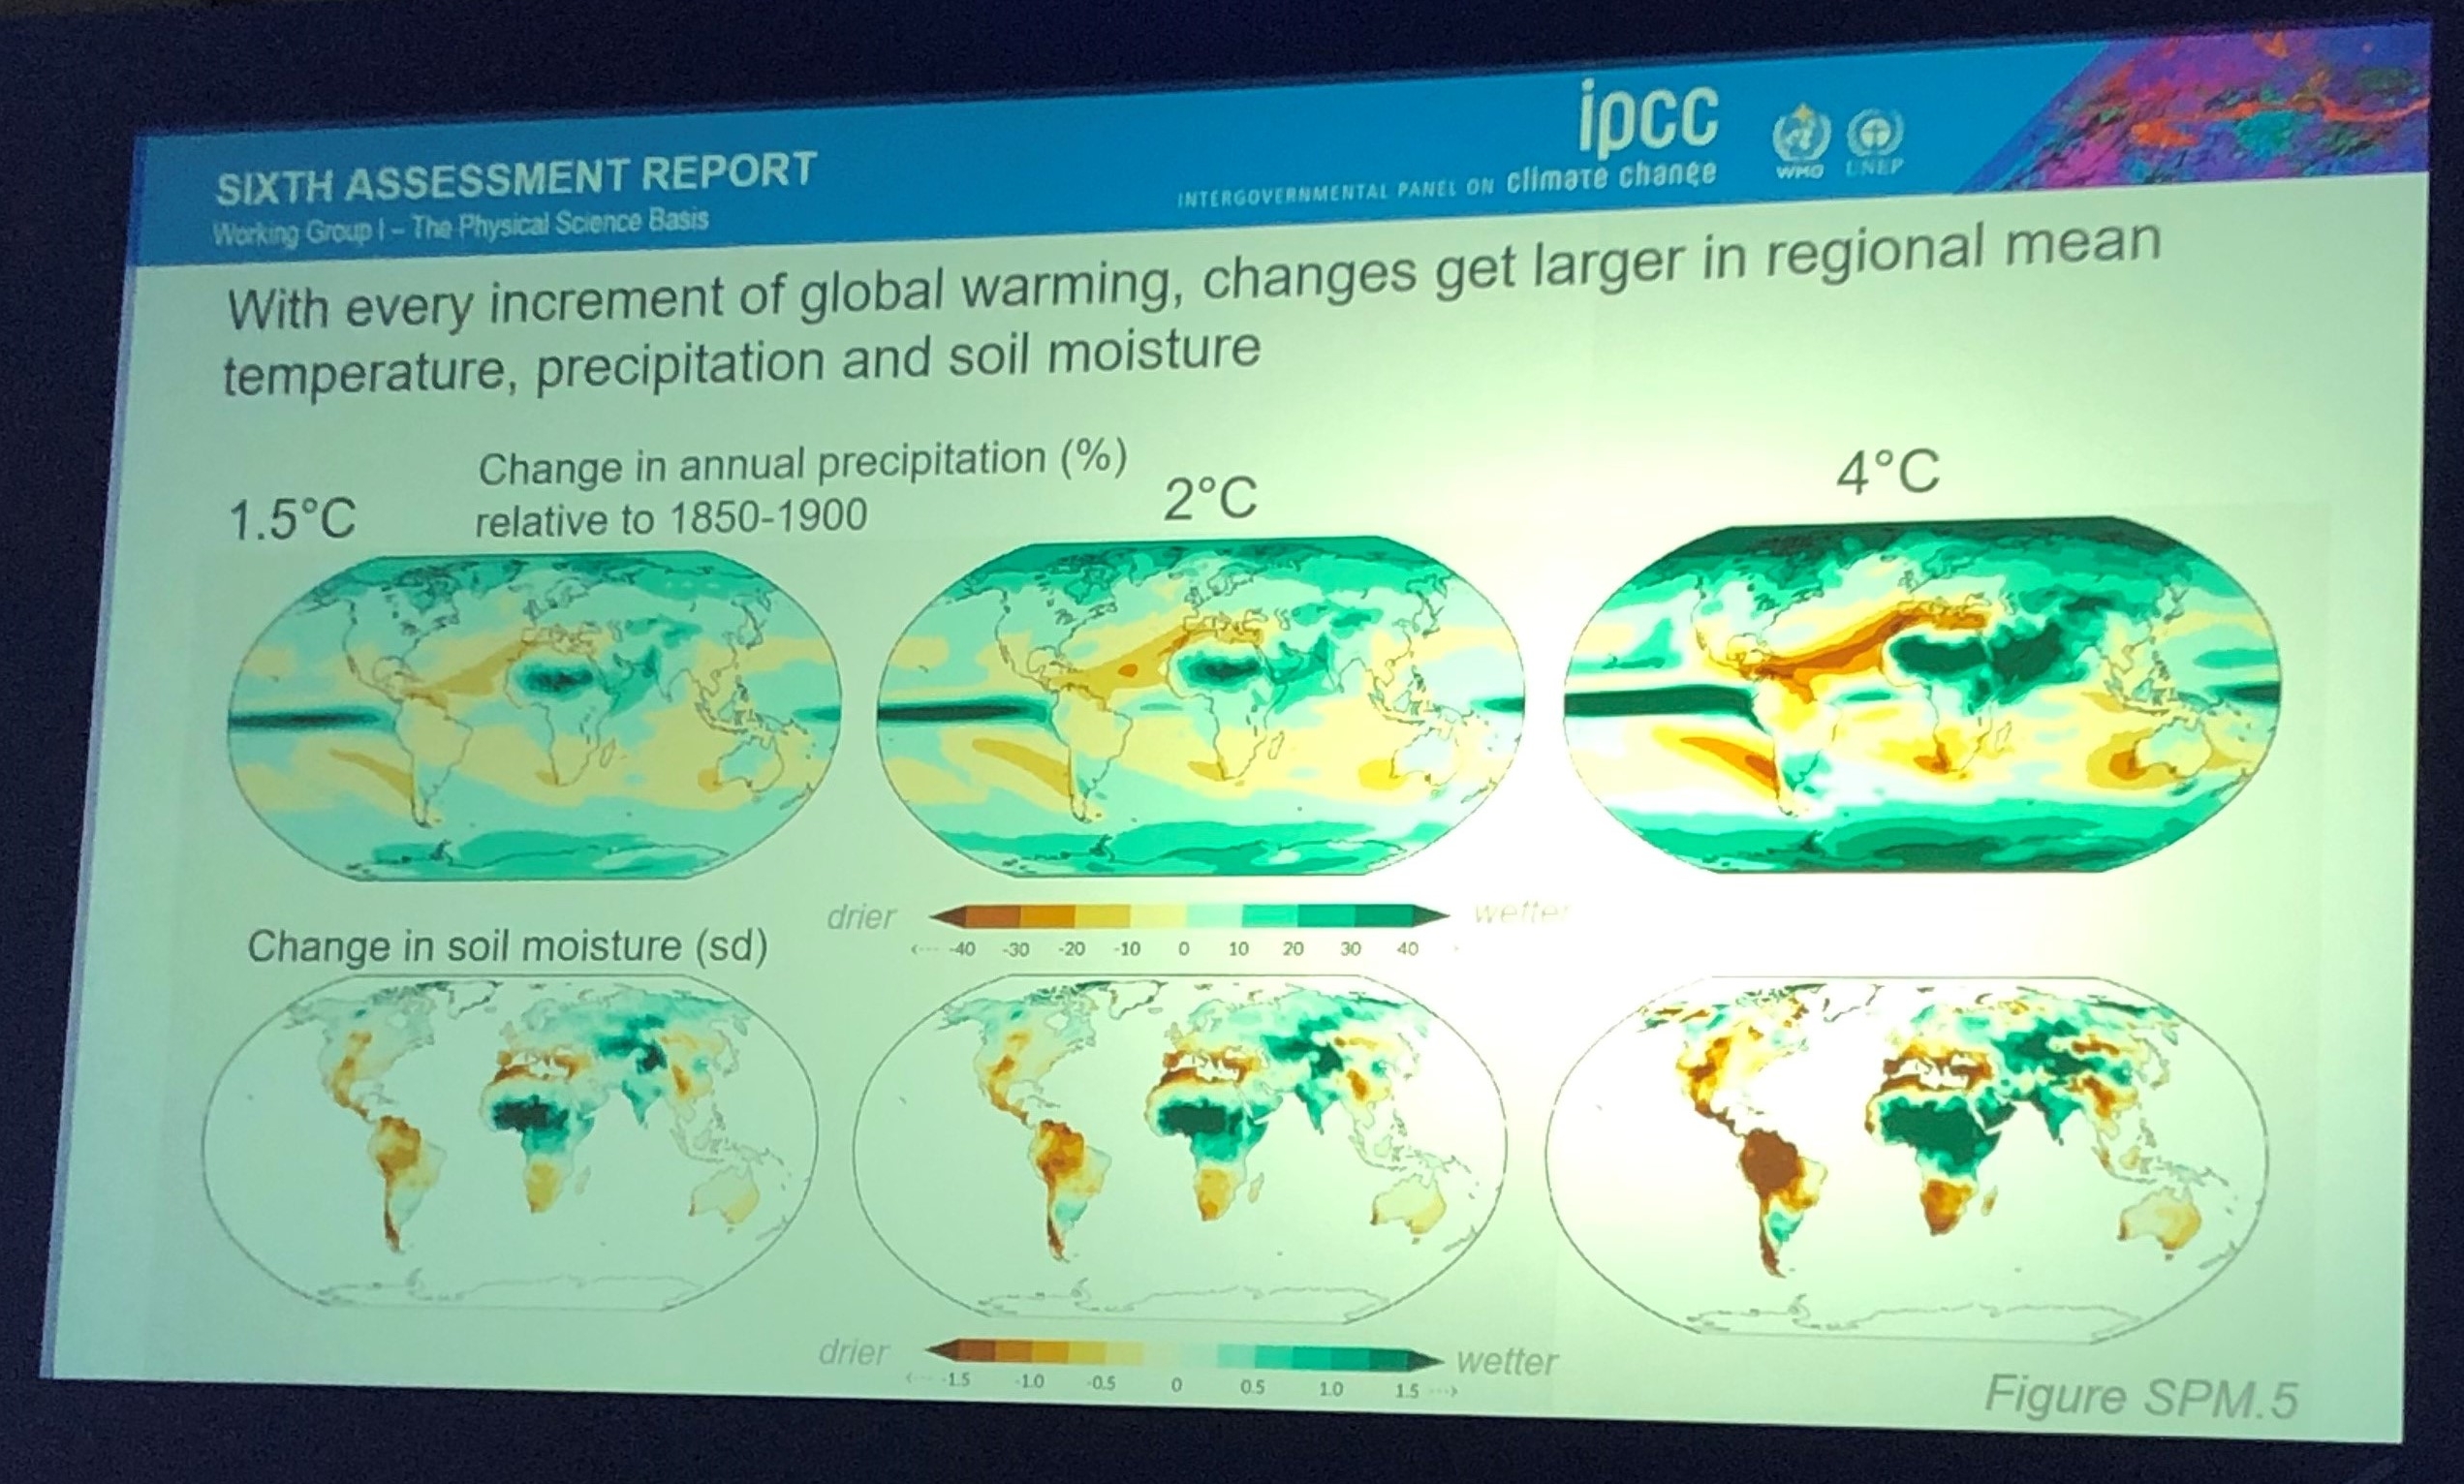 Wasserkreislauf-Schaubild des IPCC Reports